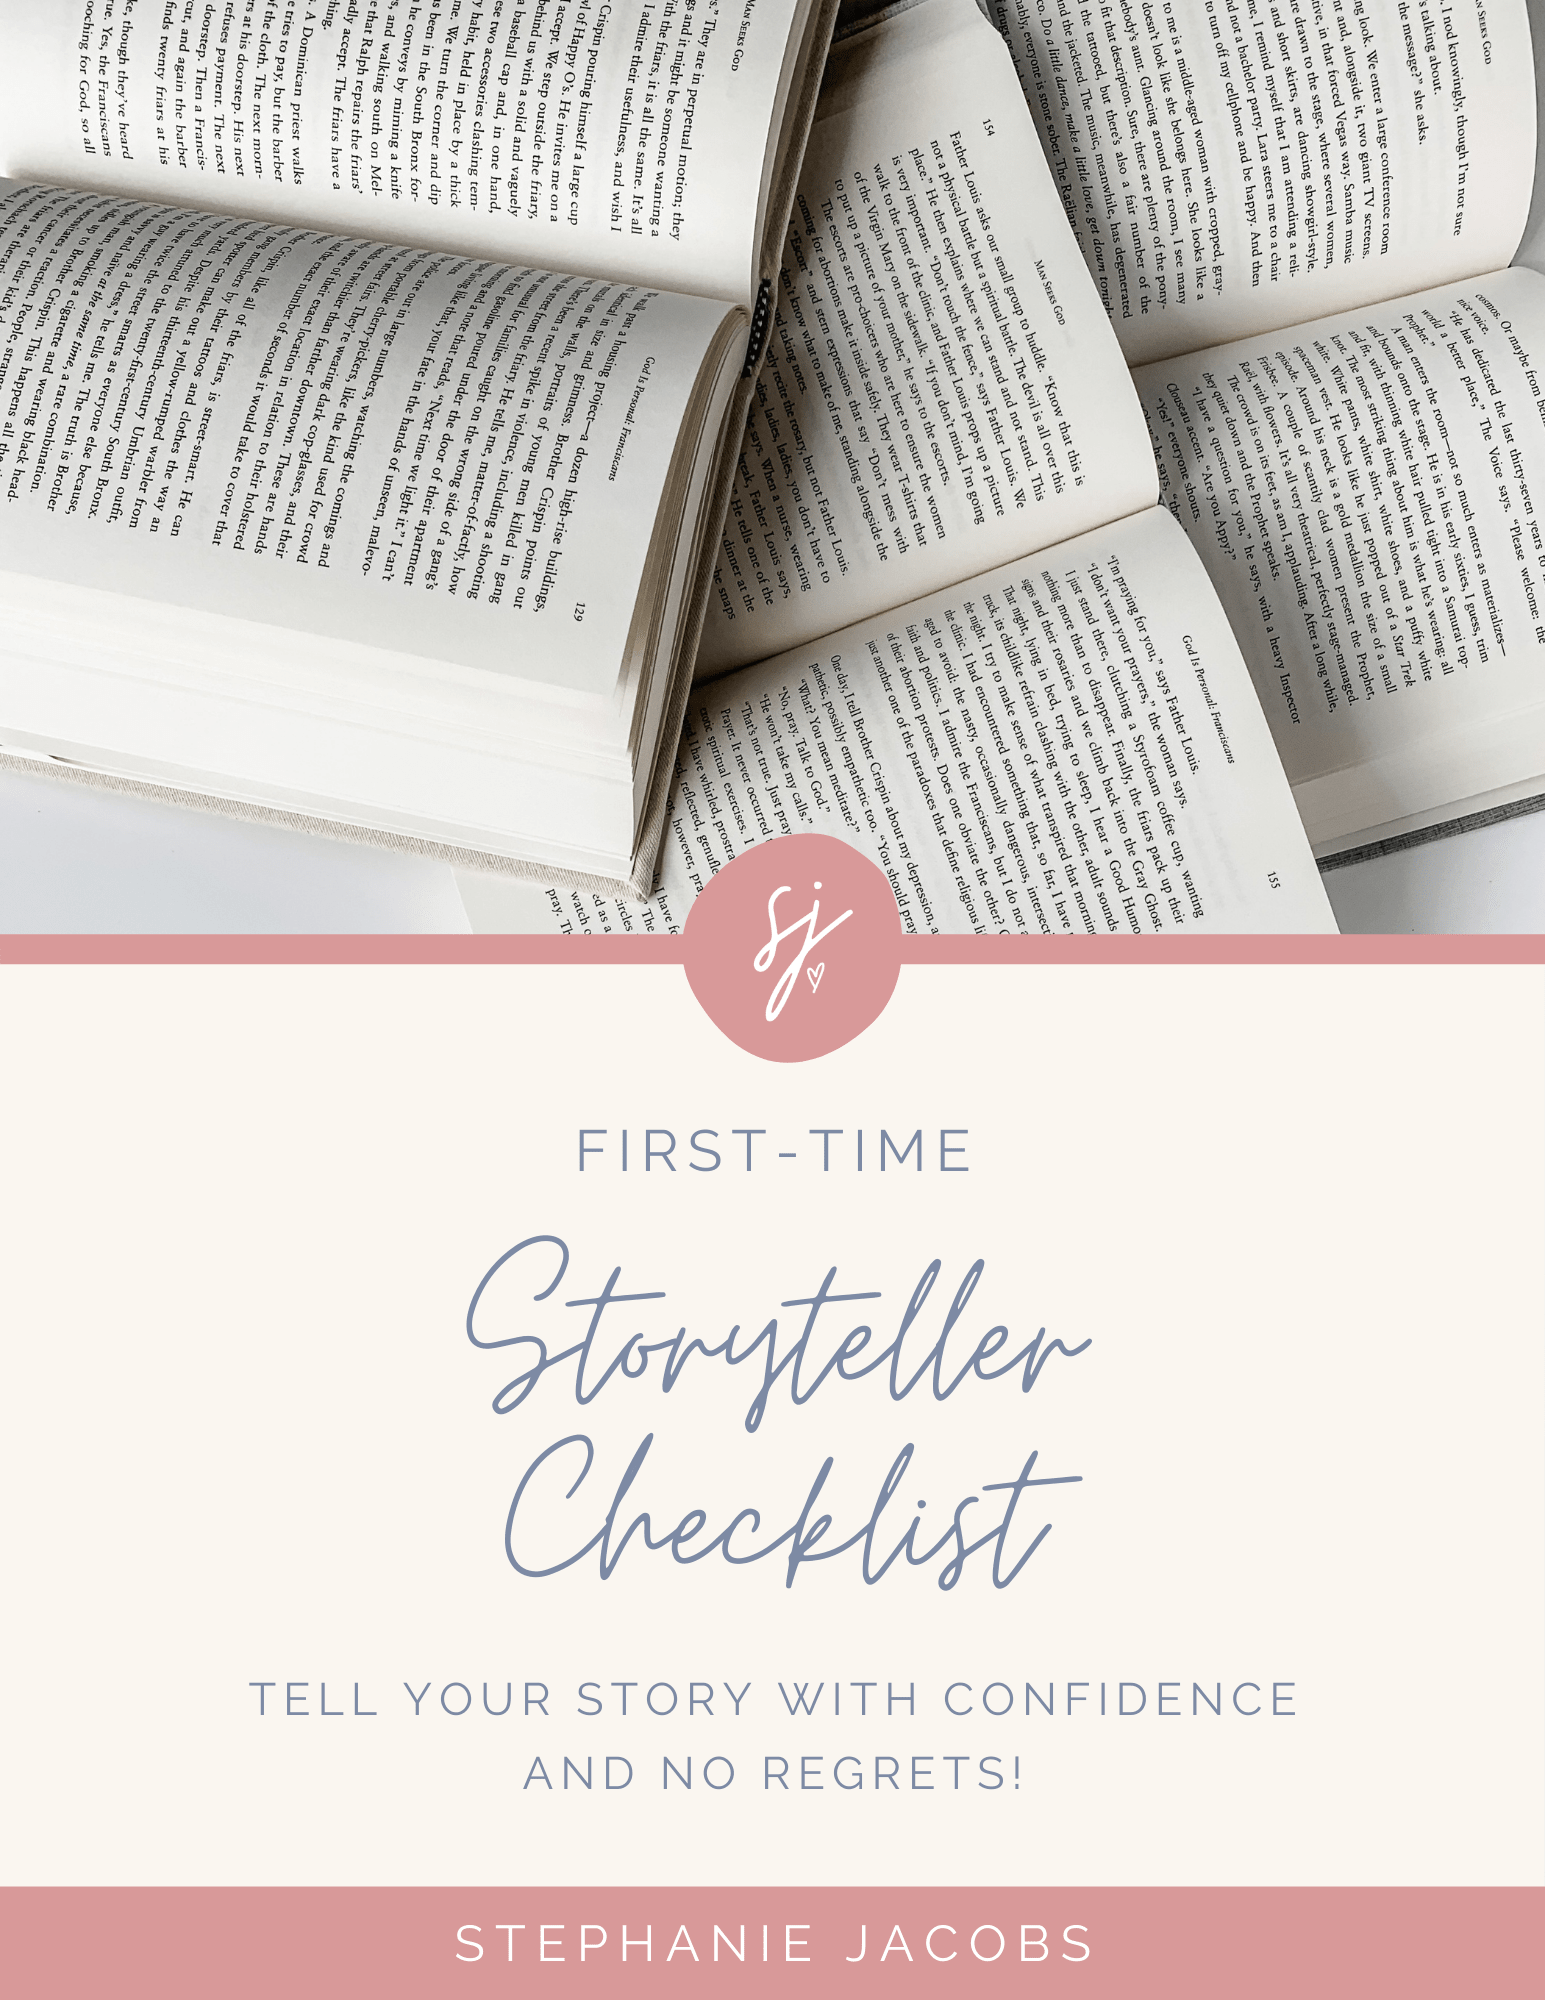 First-time Storyteller Checklist